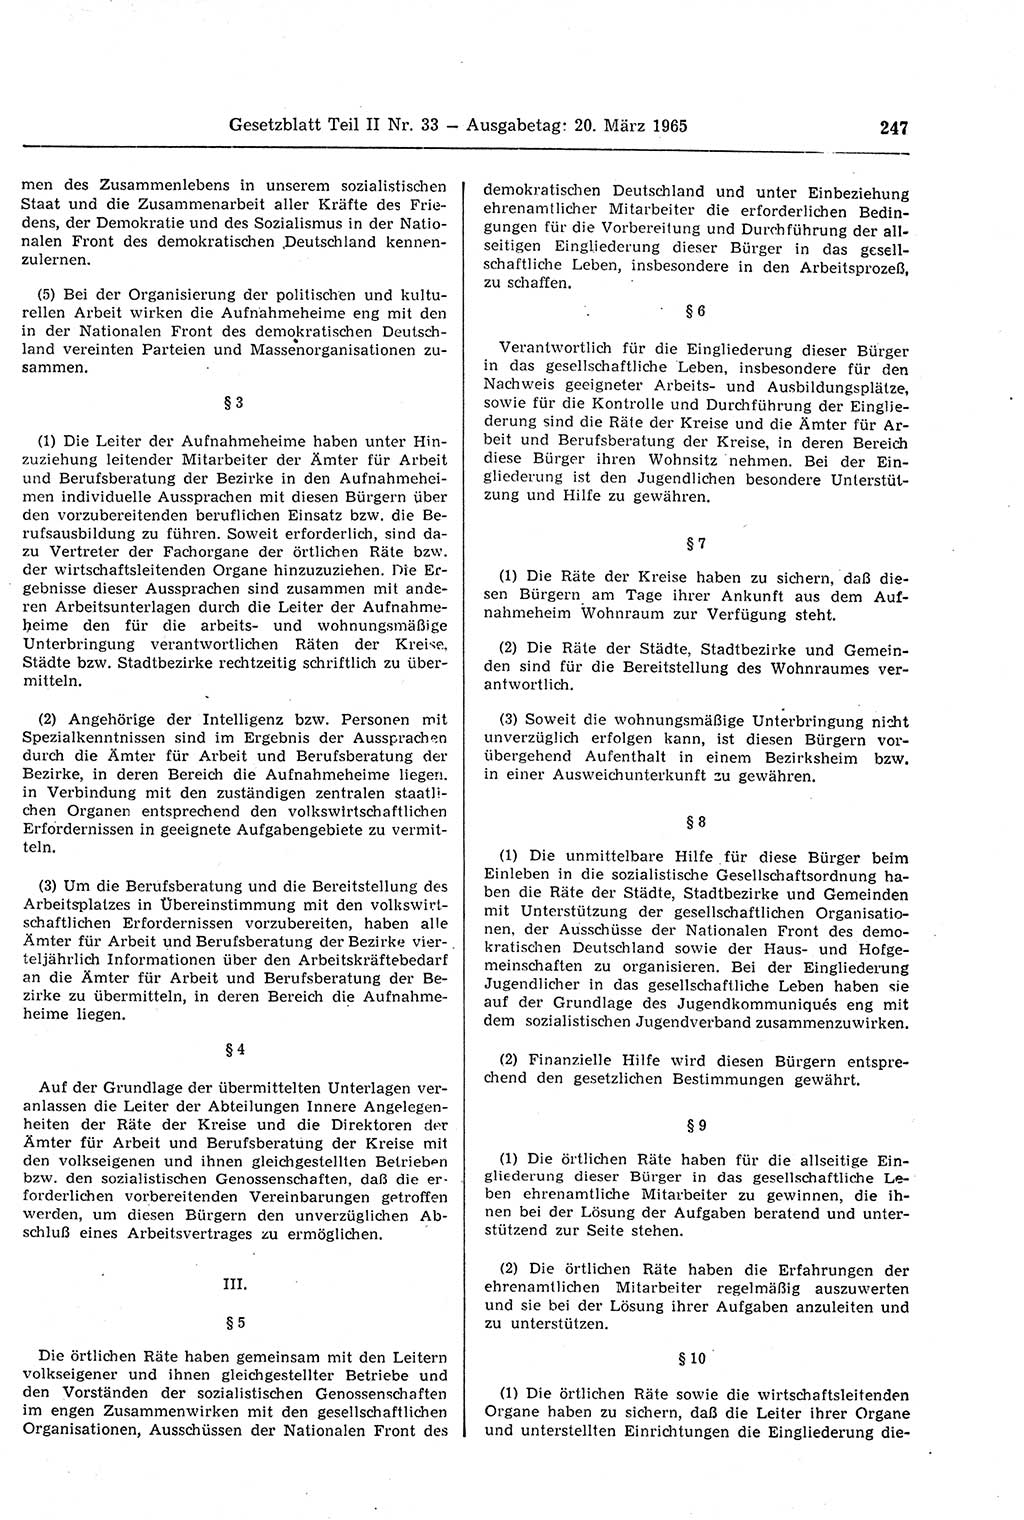 Gesetzblatt (GBl.) der Deutschen Demokratischen Republik (DDR) Teil ⅠⅠ 1965, Seite 247 (GBl. DDR ⅠⅠ 1965, S. 247)